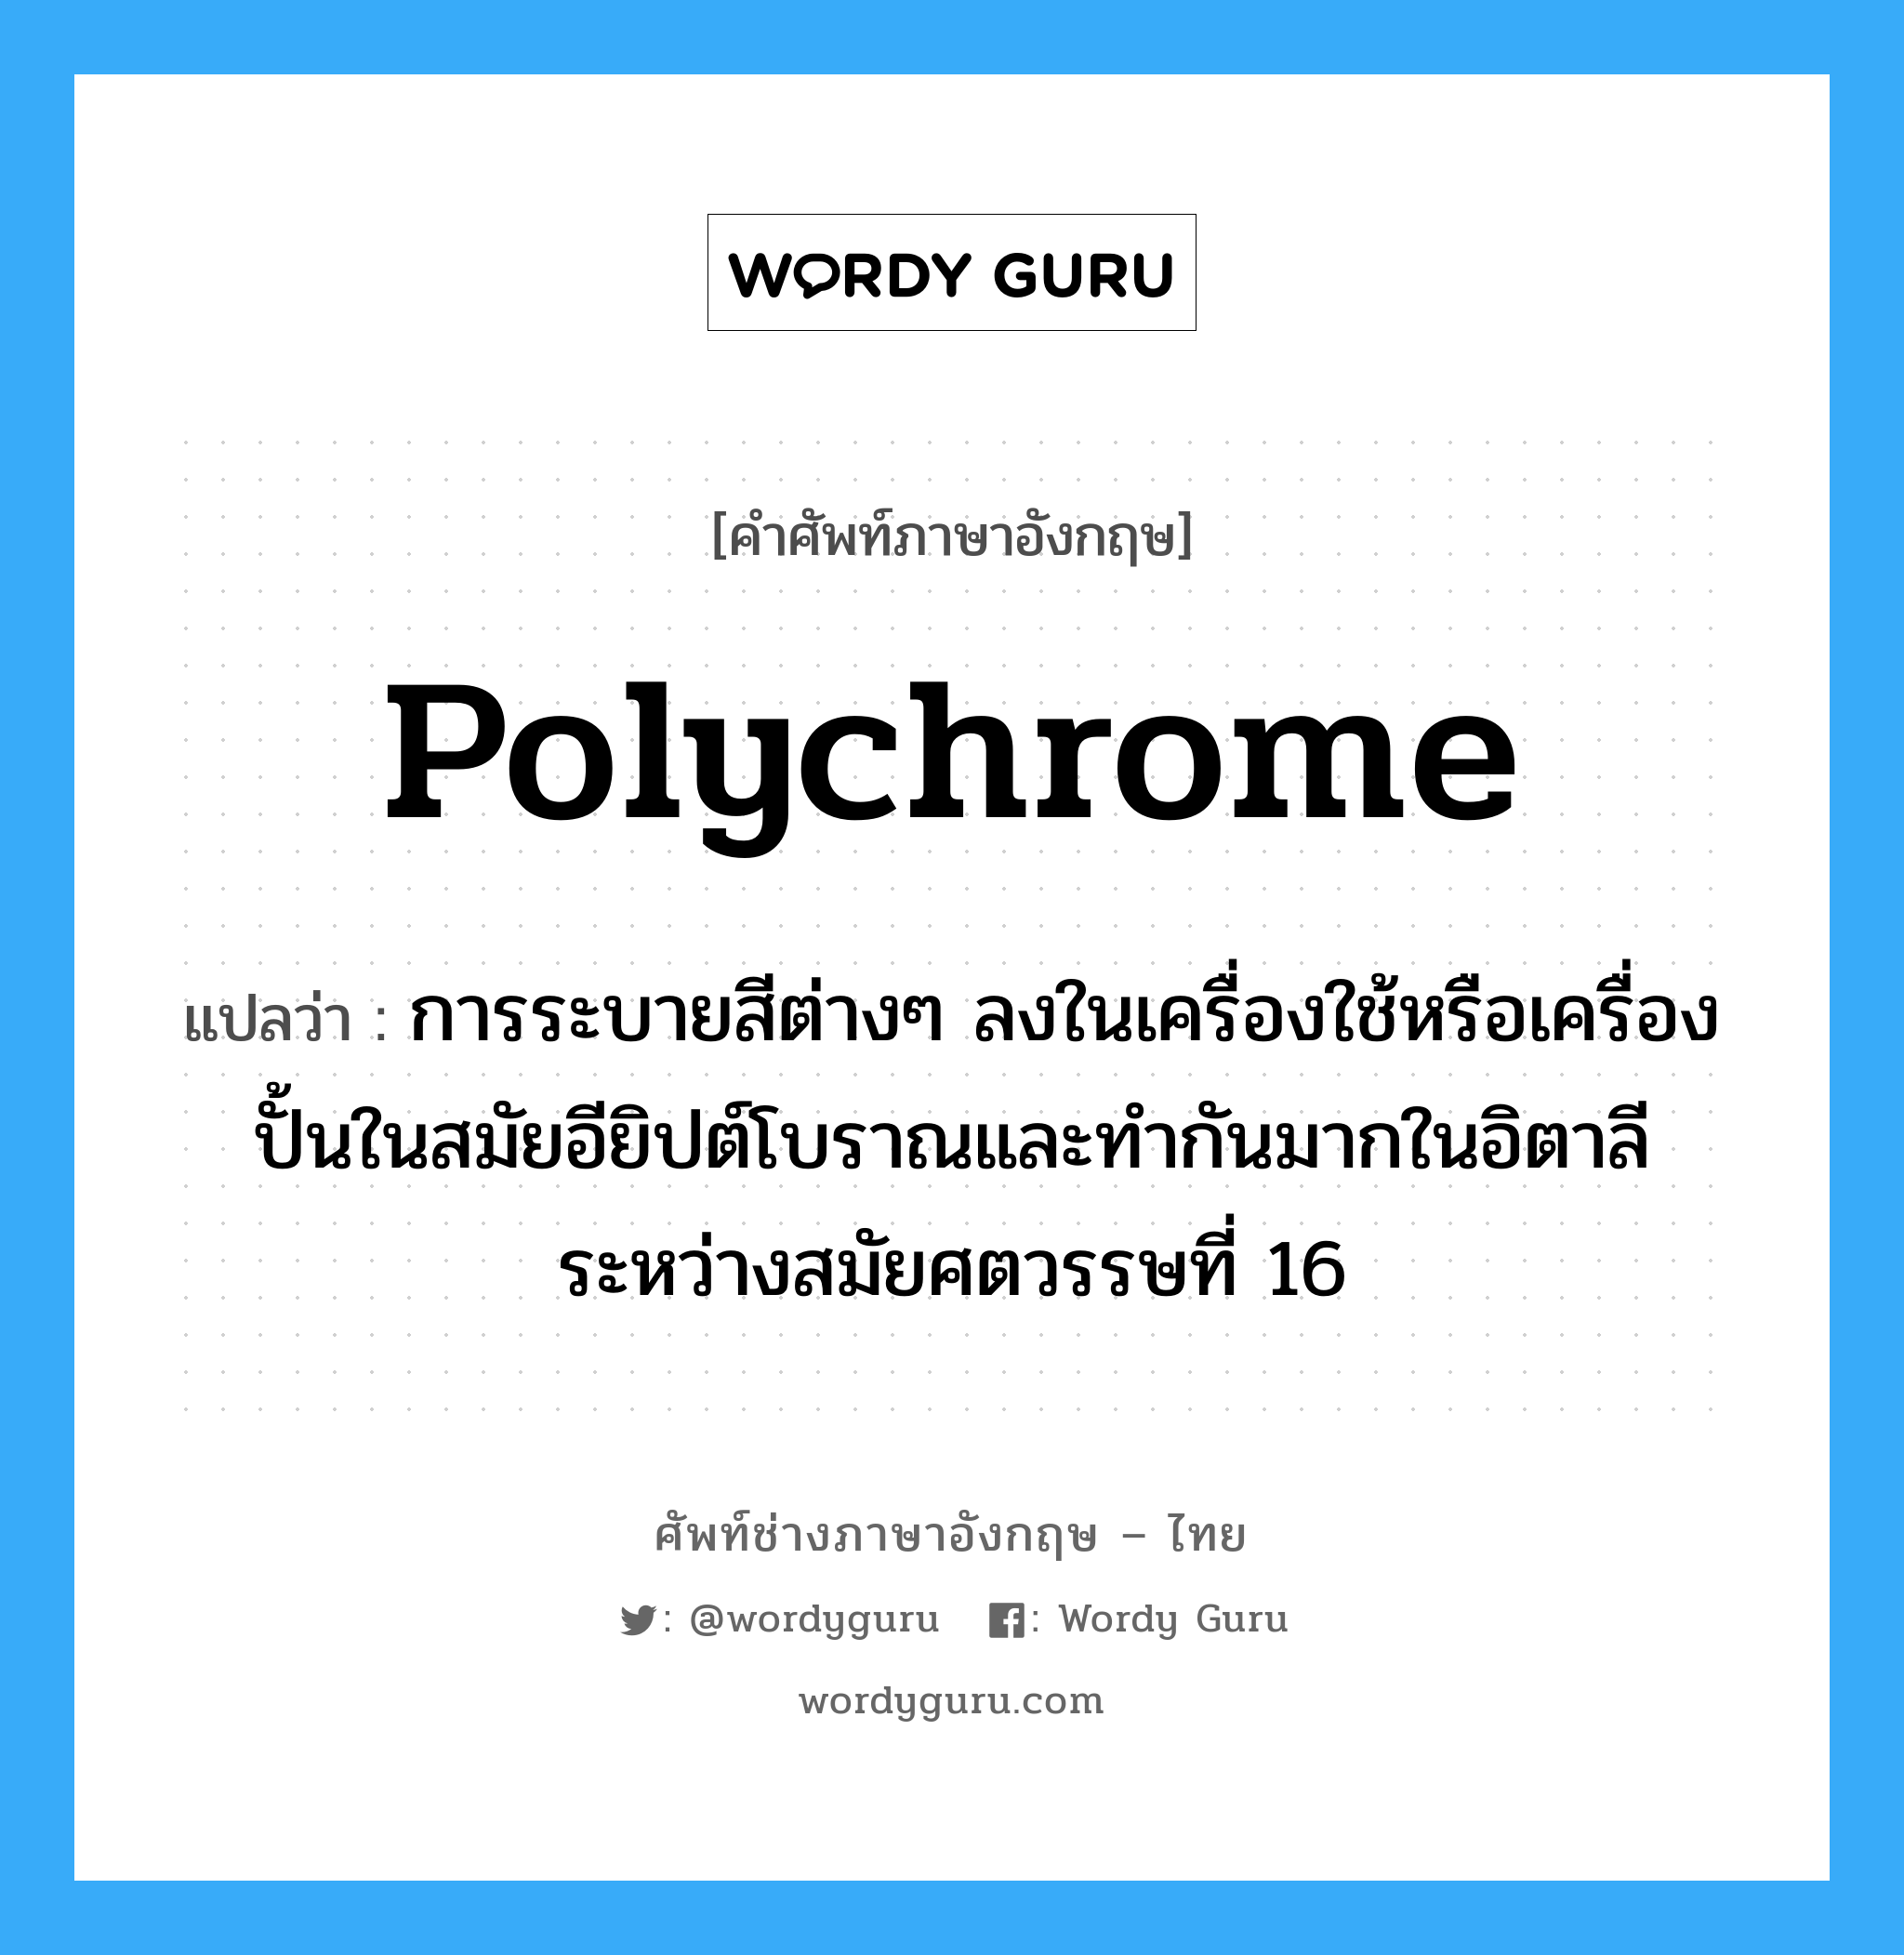 polychrome แปลว่า?, คำศัพท์ช่างภาษาอังกฤษ - ไทย polychrome คำศัพท์ภาษาอังกฤษ polychrome แปลว่า การระบายสีต่างๆ ลงในเครื่องใช้หรือเครื่องปั้นในสมัยอียิปต์โบราณและทำกันมากในอิตาลี ระหว่างสมัยศตวรรษที่ 16